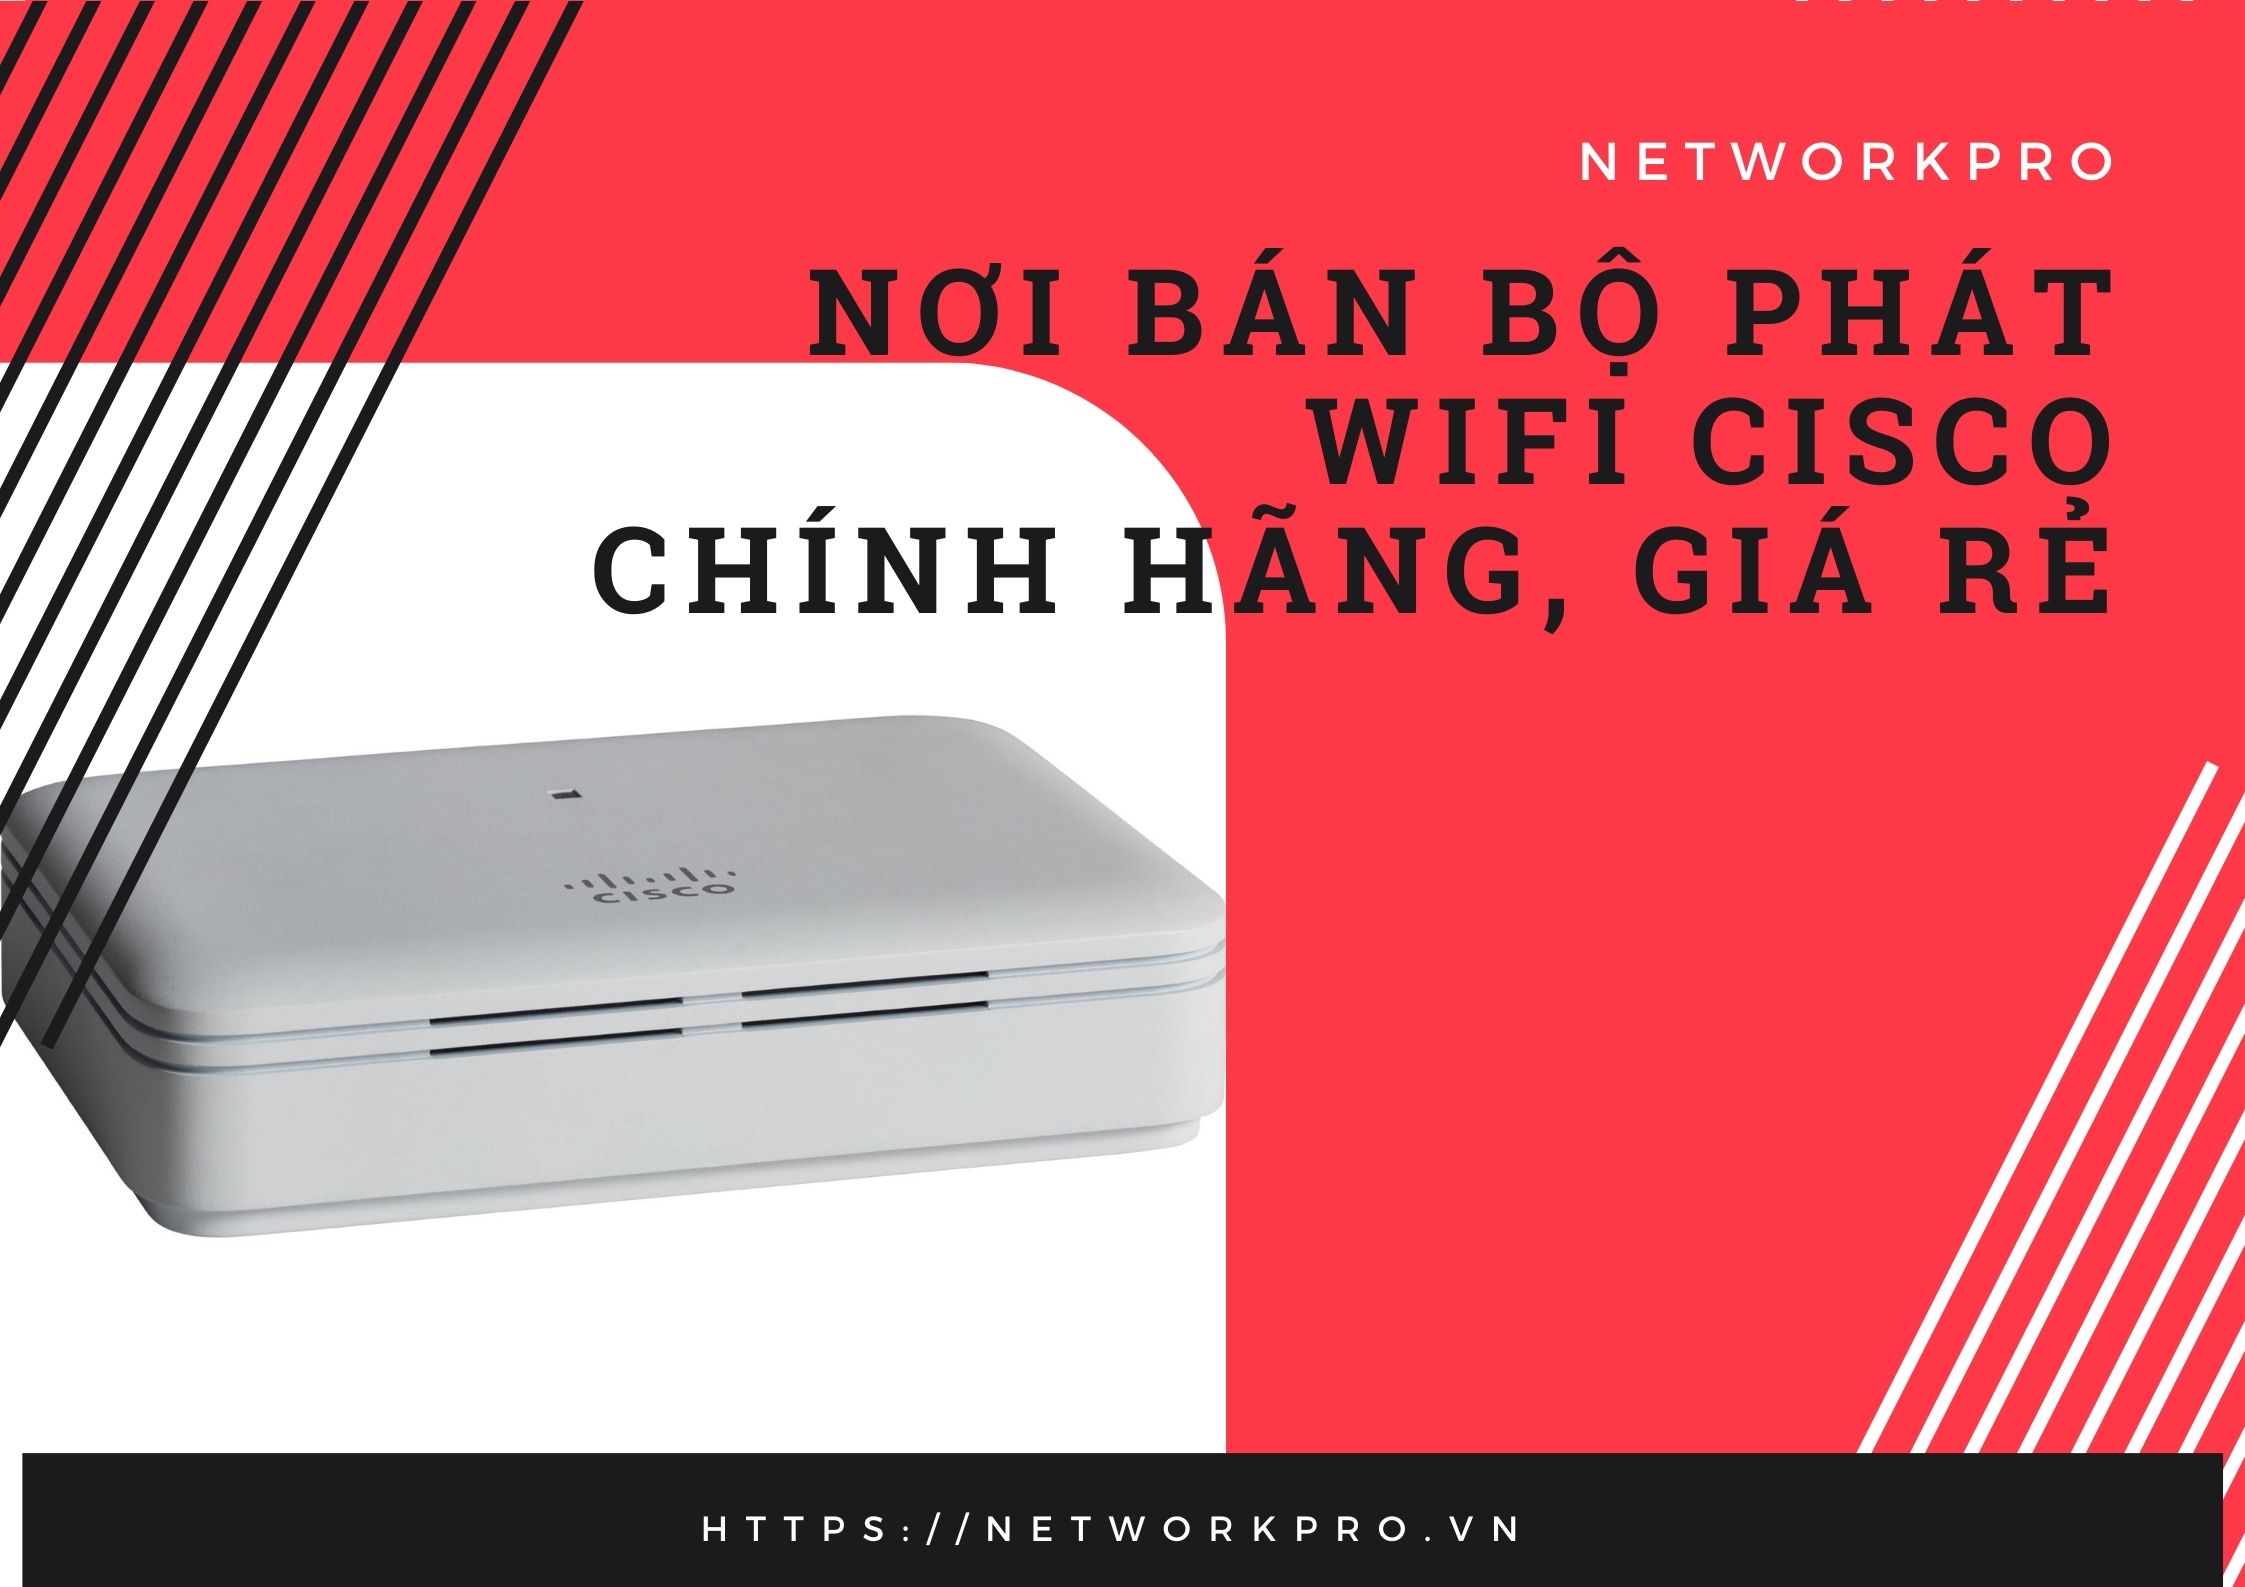 Những ưu đãi khi mua WiFi Cisco tại NetworkPro